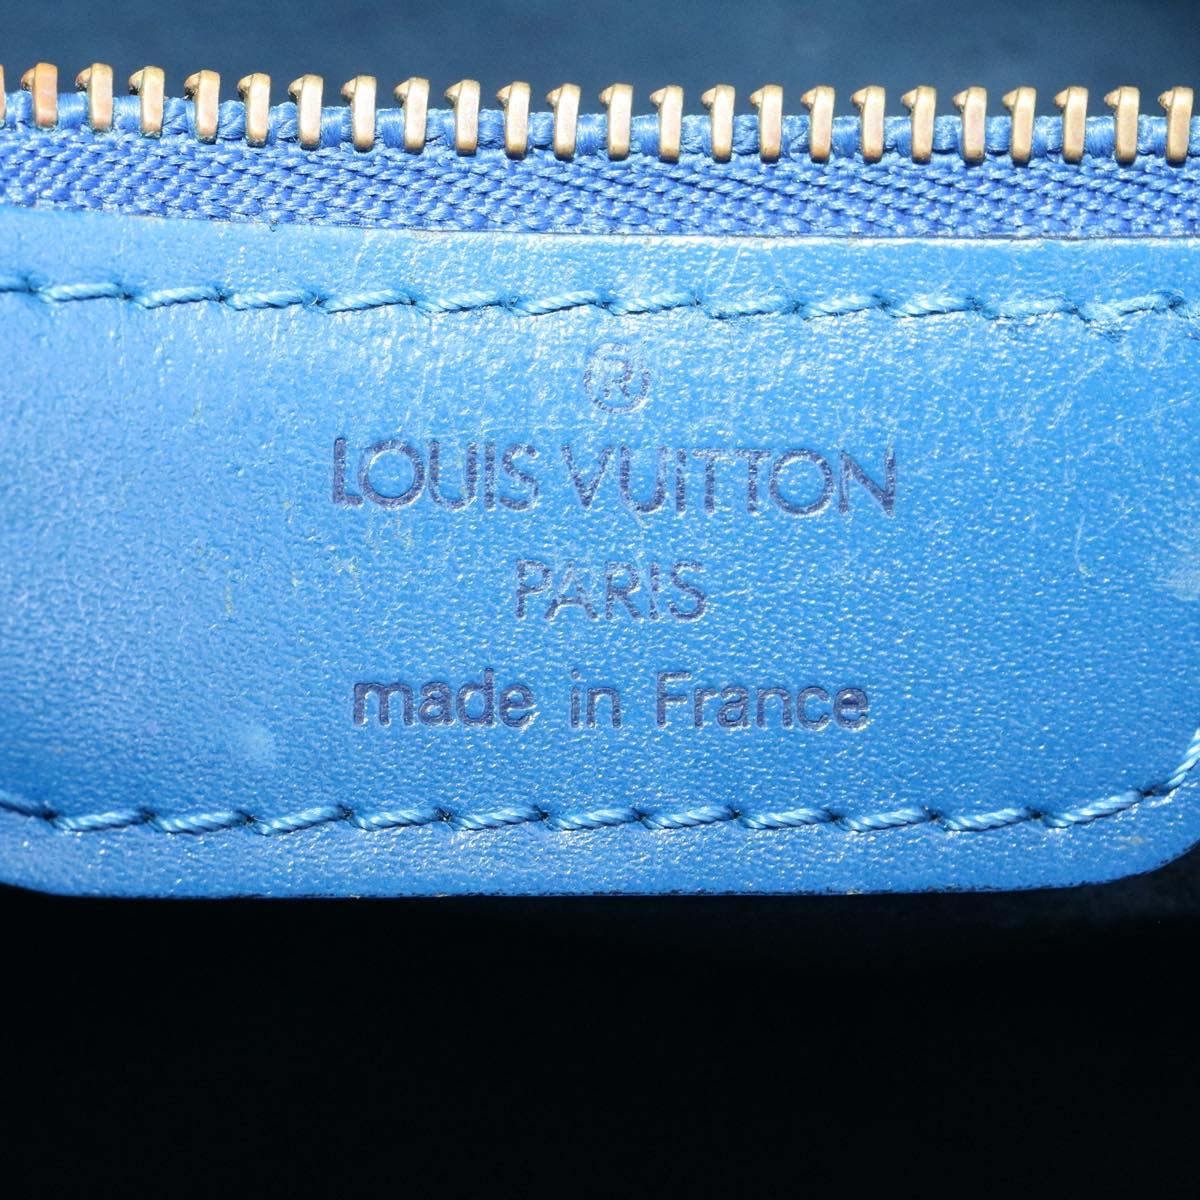 LOUIS VUITTON Epi Saint Jacques Shopping Shoulder Bag Blue M52275 Auth ds220